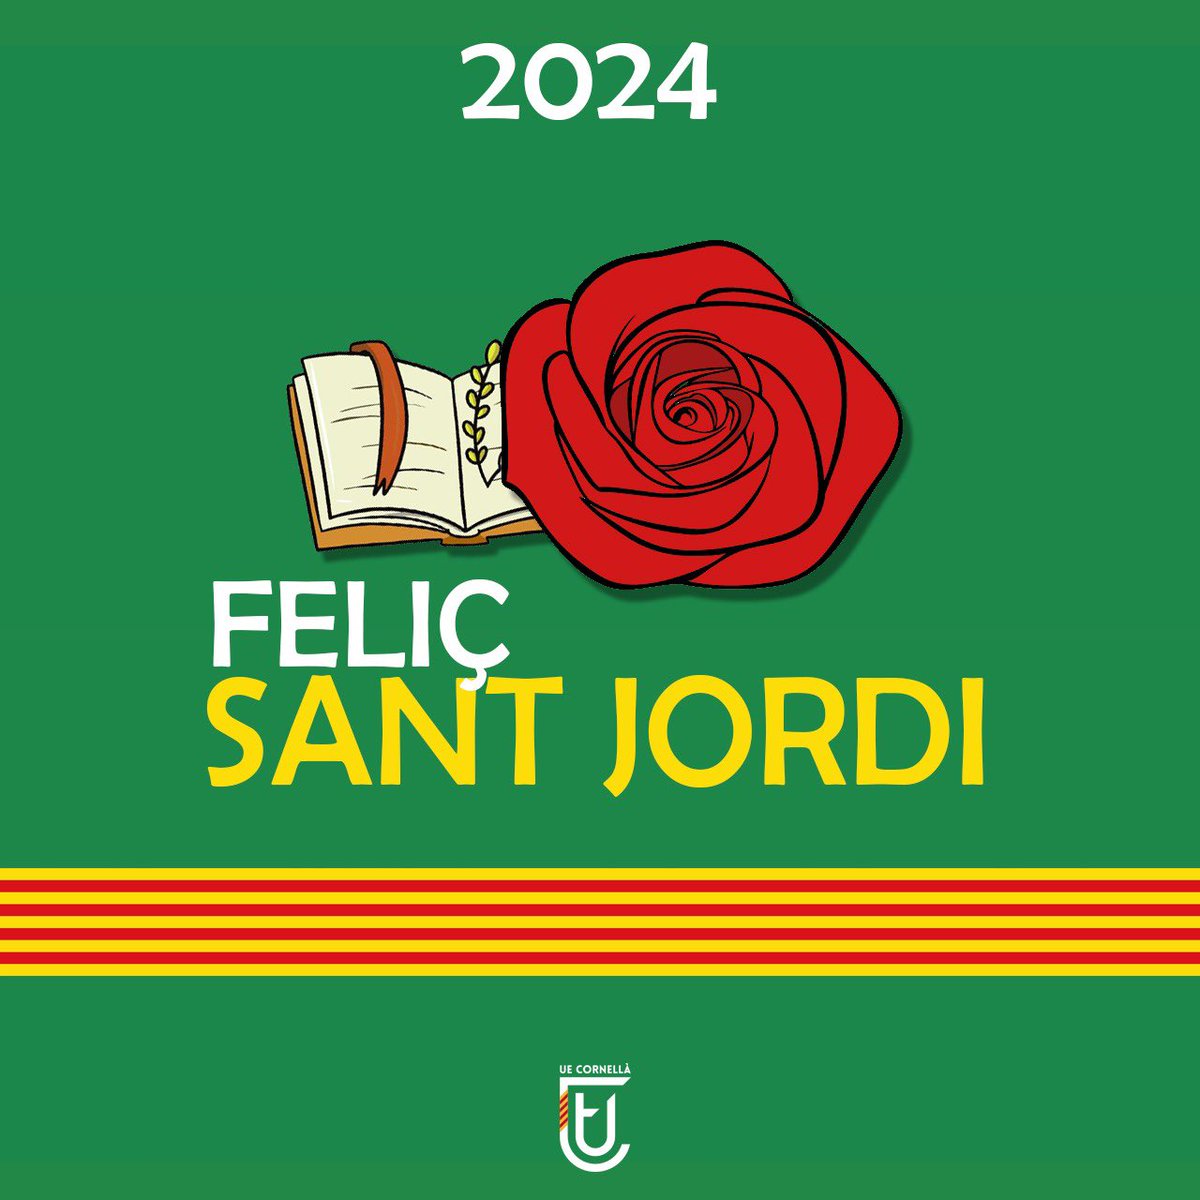 🌹🐉 Feliç #SantJordi 2024! 📚 ☺️ La #UECornellà us desitja una excel•lent Diada de Sant Jordi! #Ambelverdalcor 💚